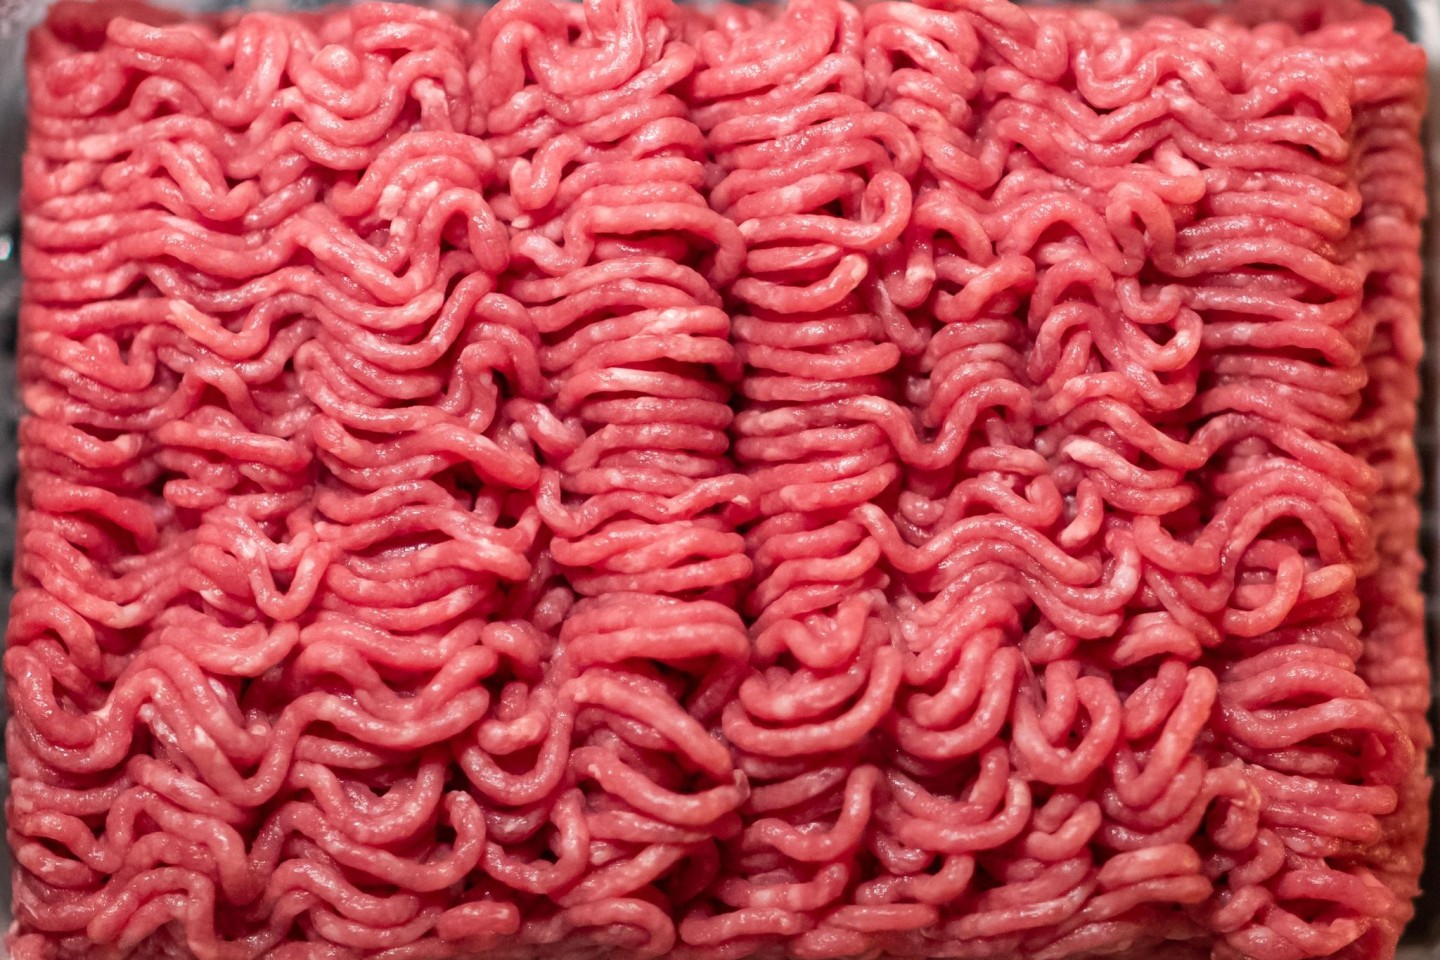 Bio-Hackfleisch vom Rind aus dem Supermarkt liegt in einer Schale.